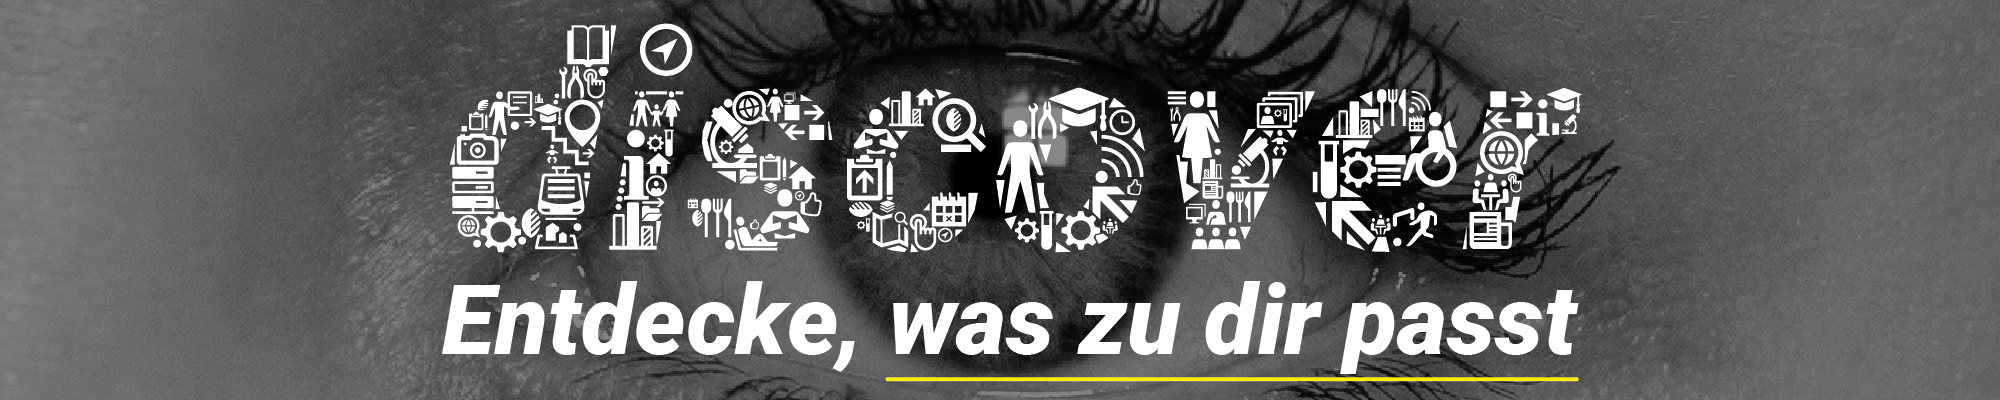 Logo Erlebsniswelt Maschinenbau und weißer Schriftzug 'discover Entdecke, was zu dir passt' vor grauem Hintergrundbild eines Auges